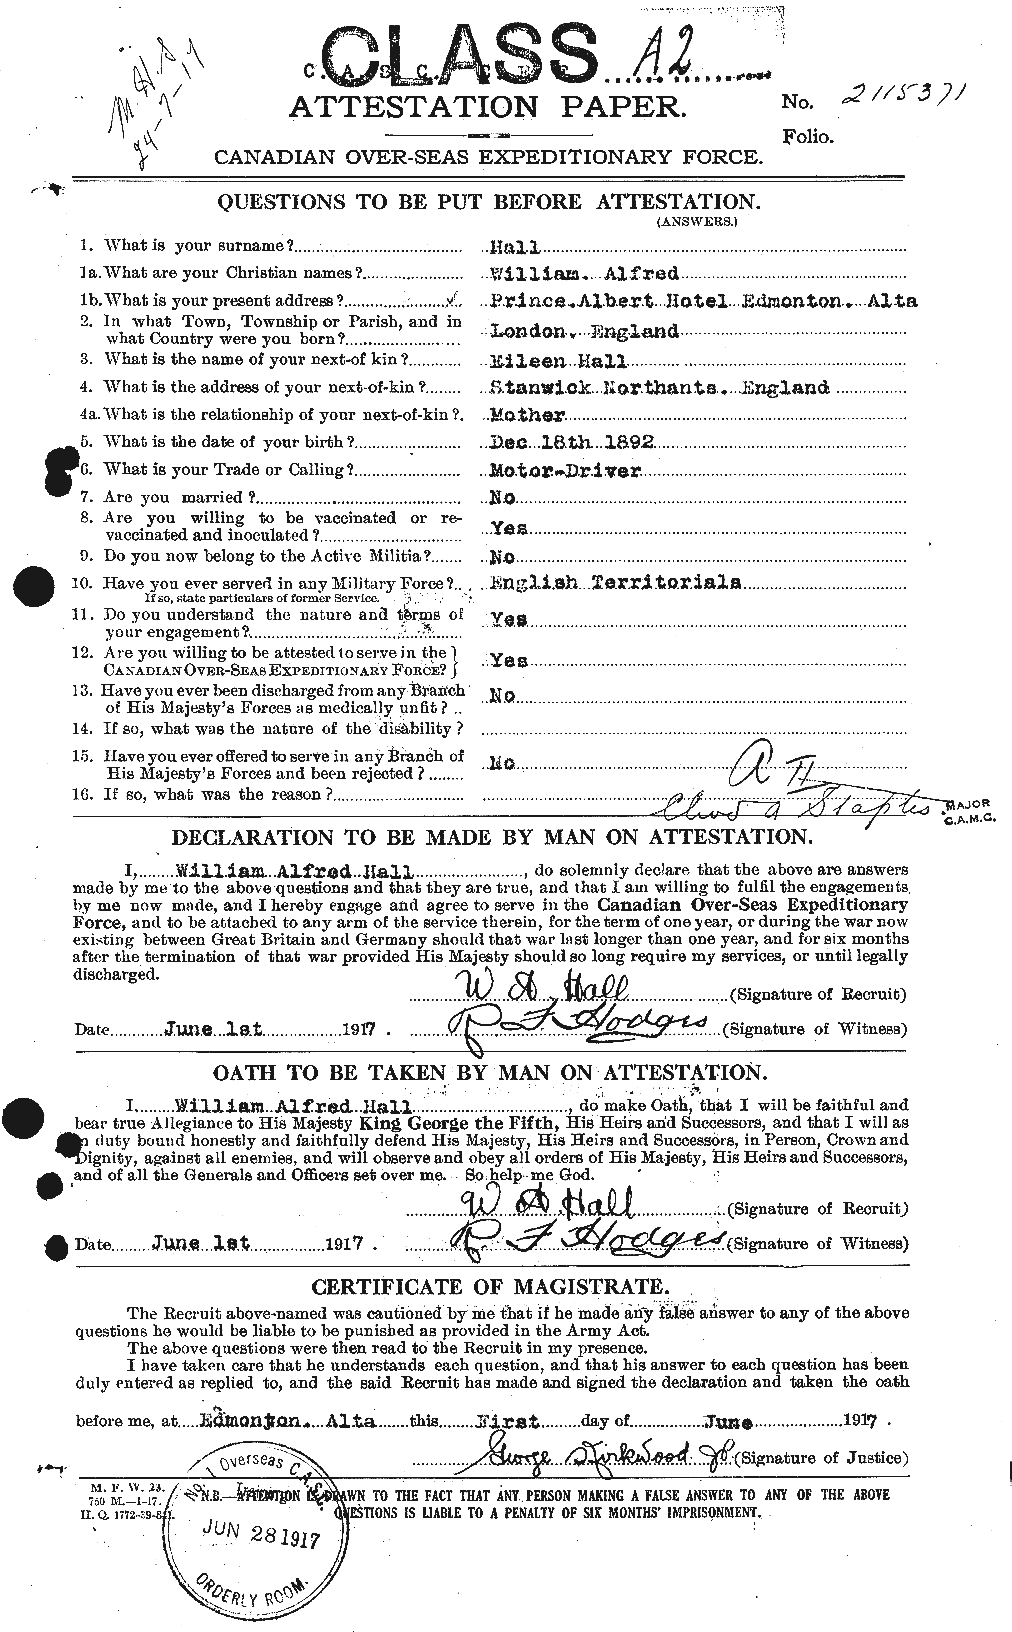 Dossiers du Personnel de la Première Guerre mondiale - CEC 371122a